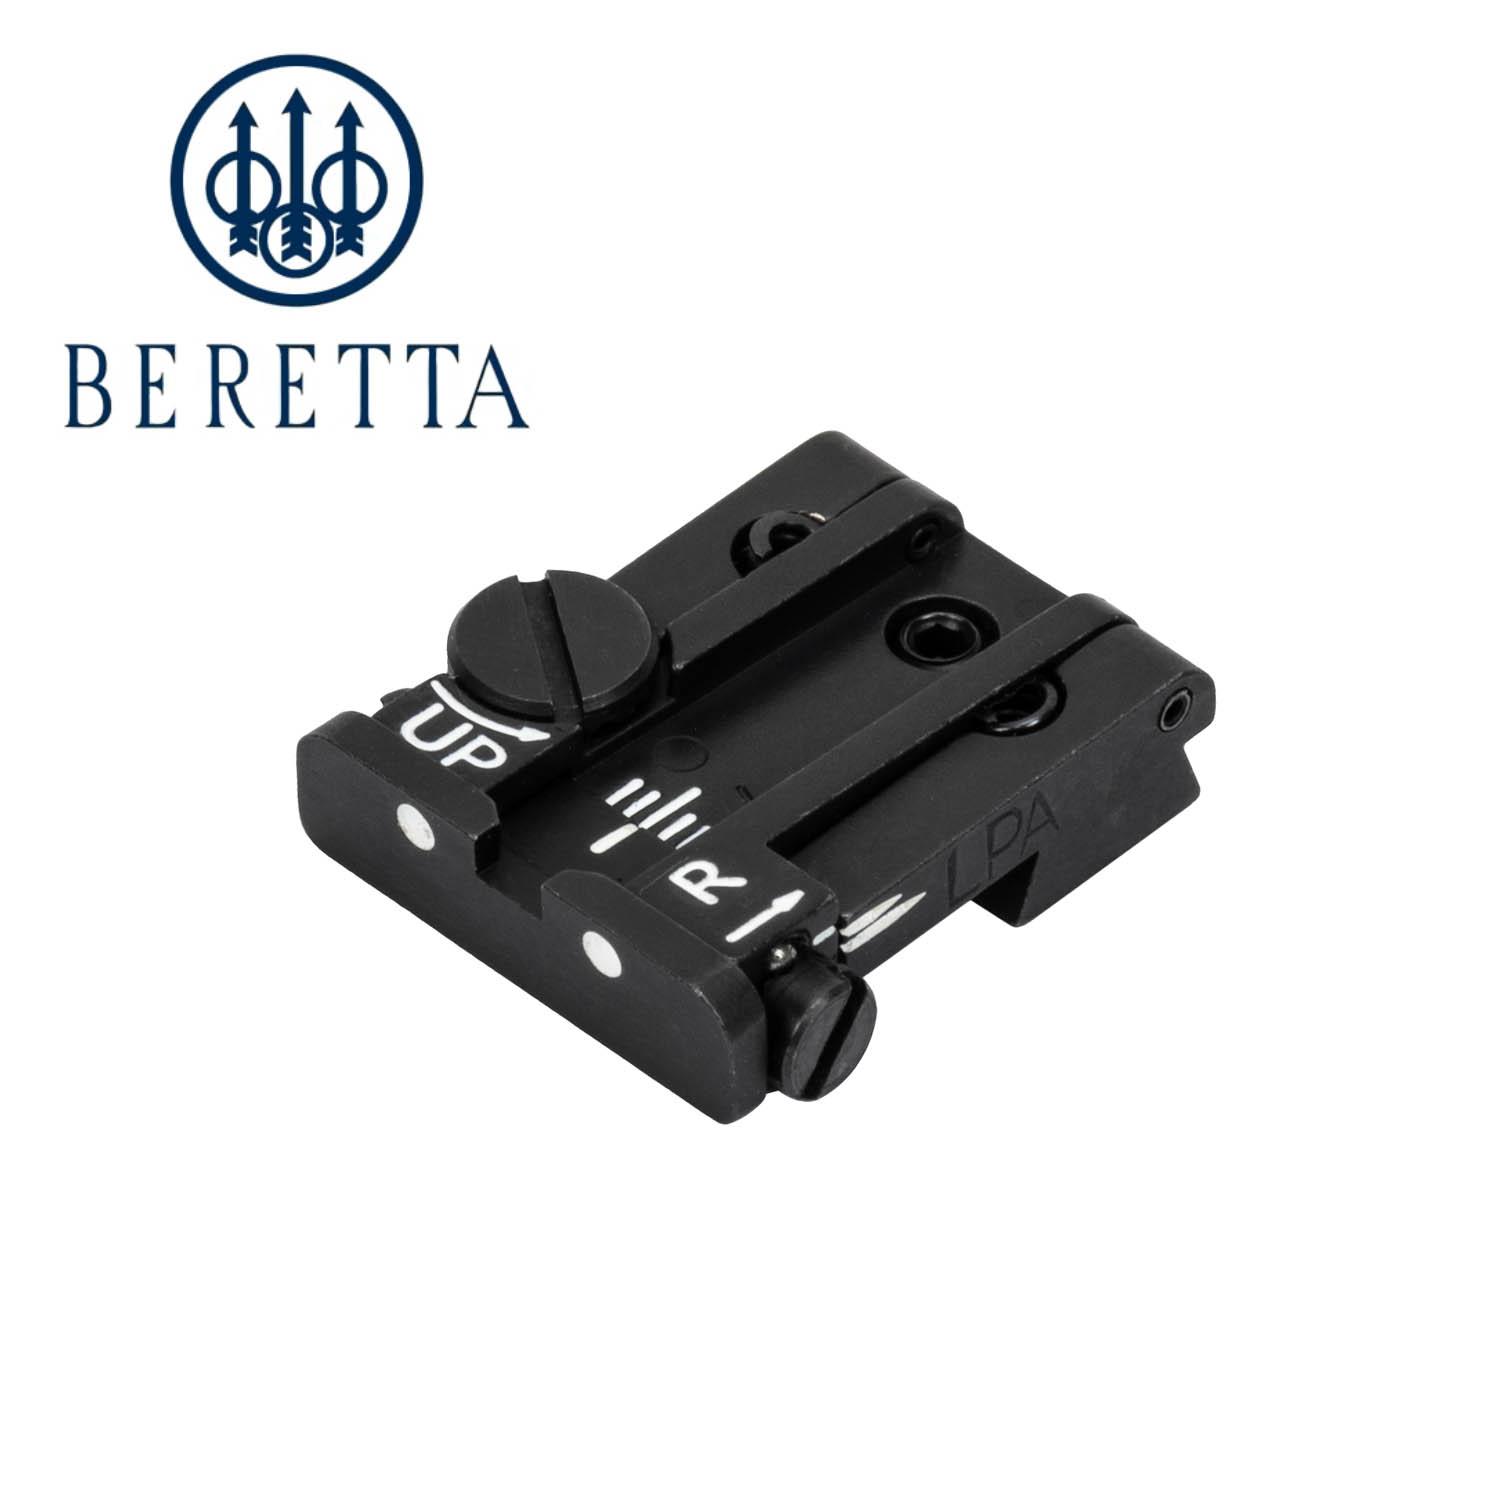 beretta m9a1 sights